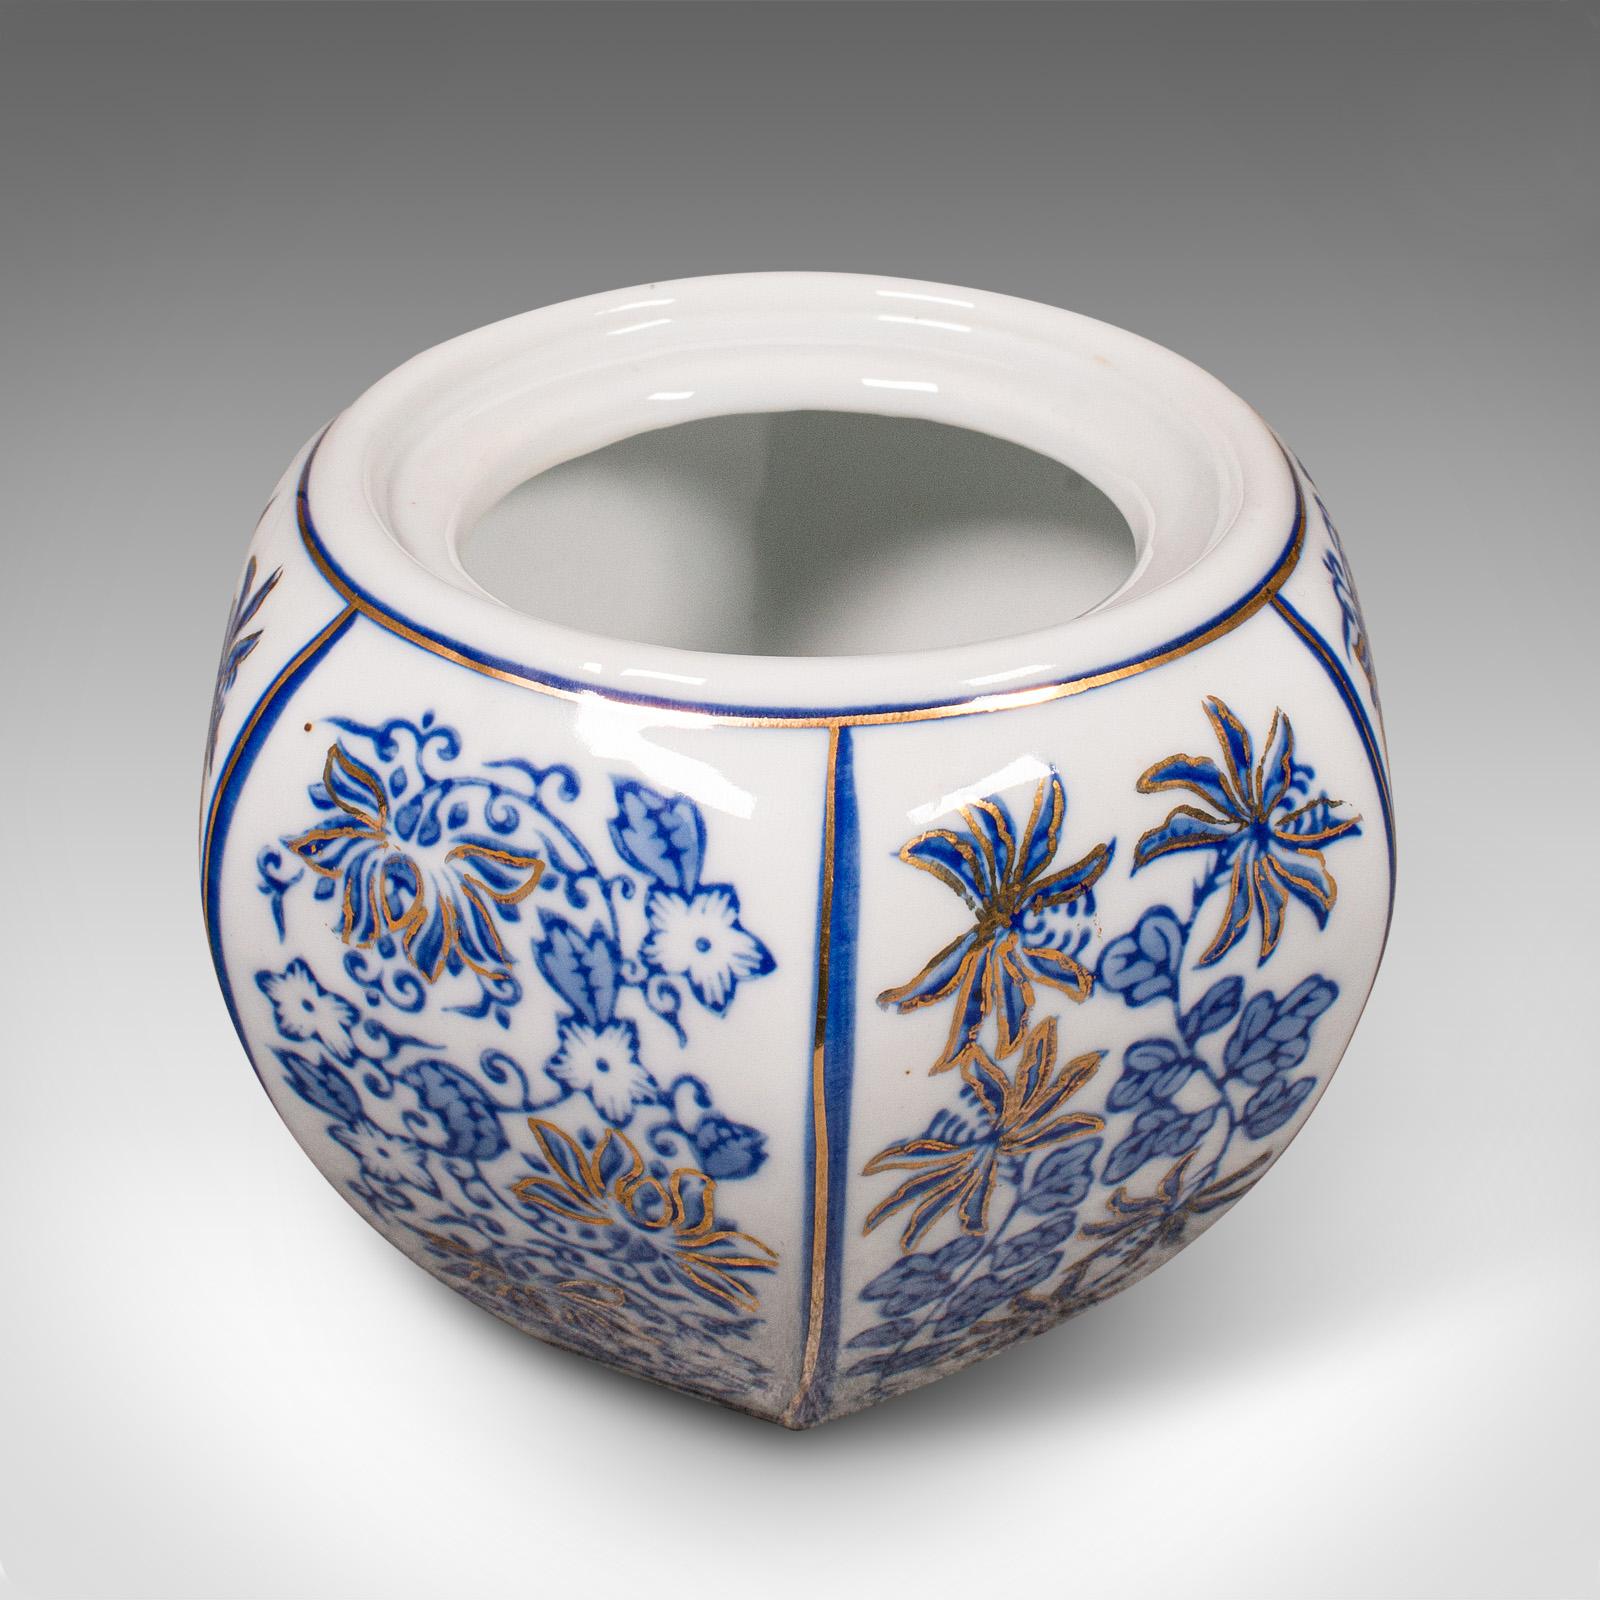 Il s'agit d'un pot à épices vintage bleu et blanc. Pot décoratif chinois en céramique, datant de la fin de la période Art déco, vers 1940.

Couleur et forme attrayantes, aspect décoratif charmant
Présente une patine vieillie souhaitable sur toute sa